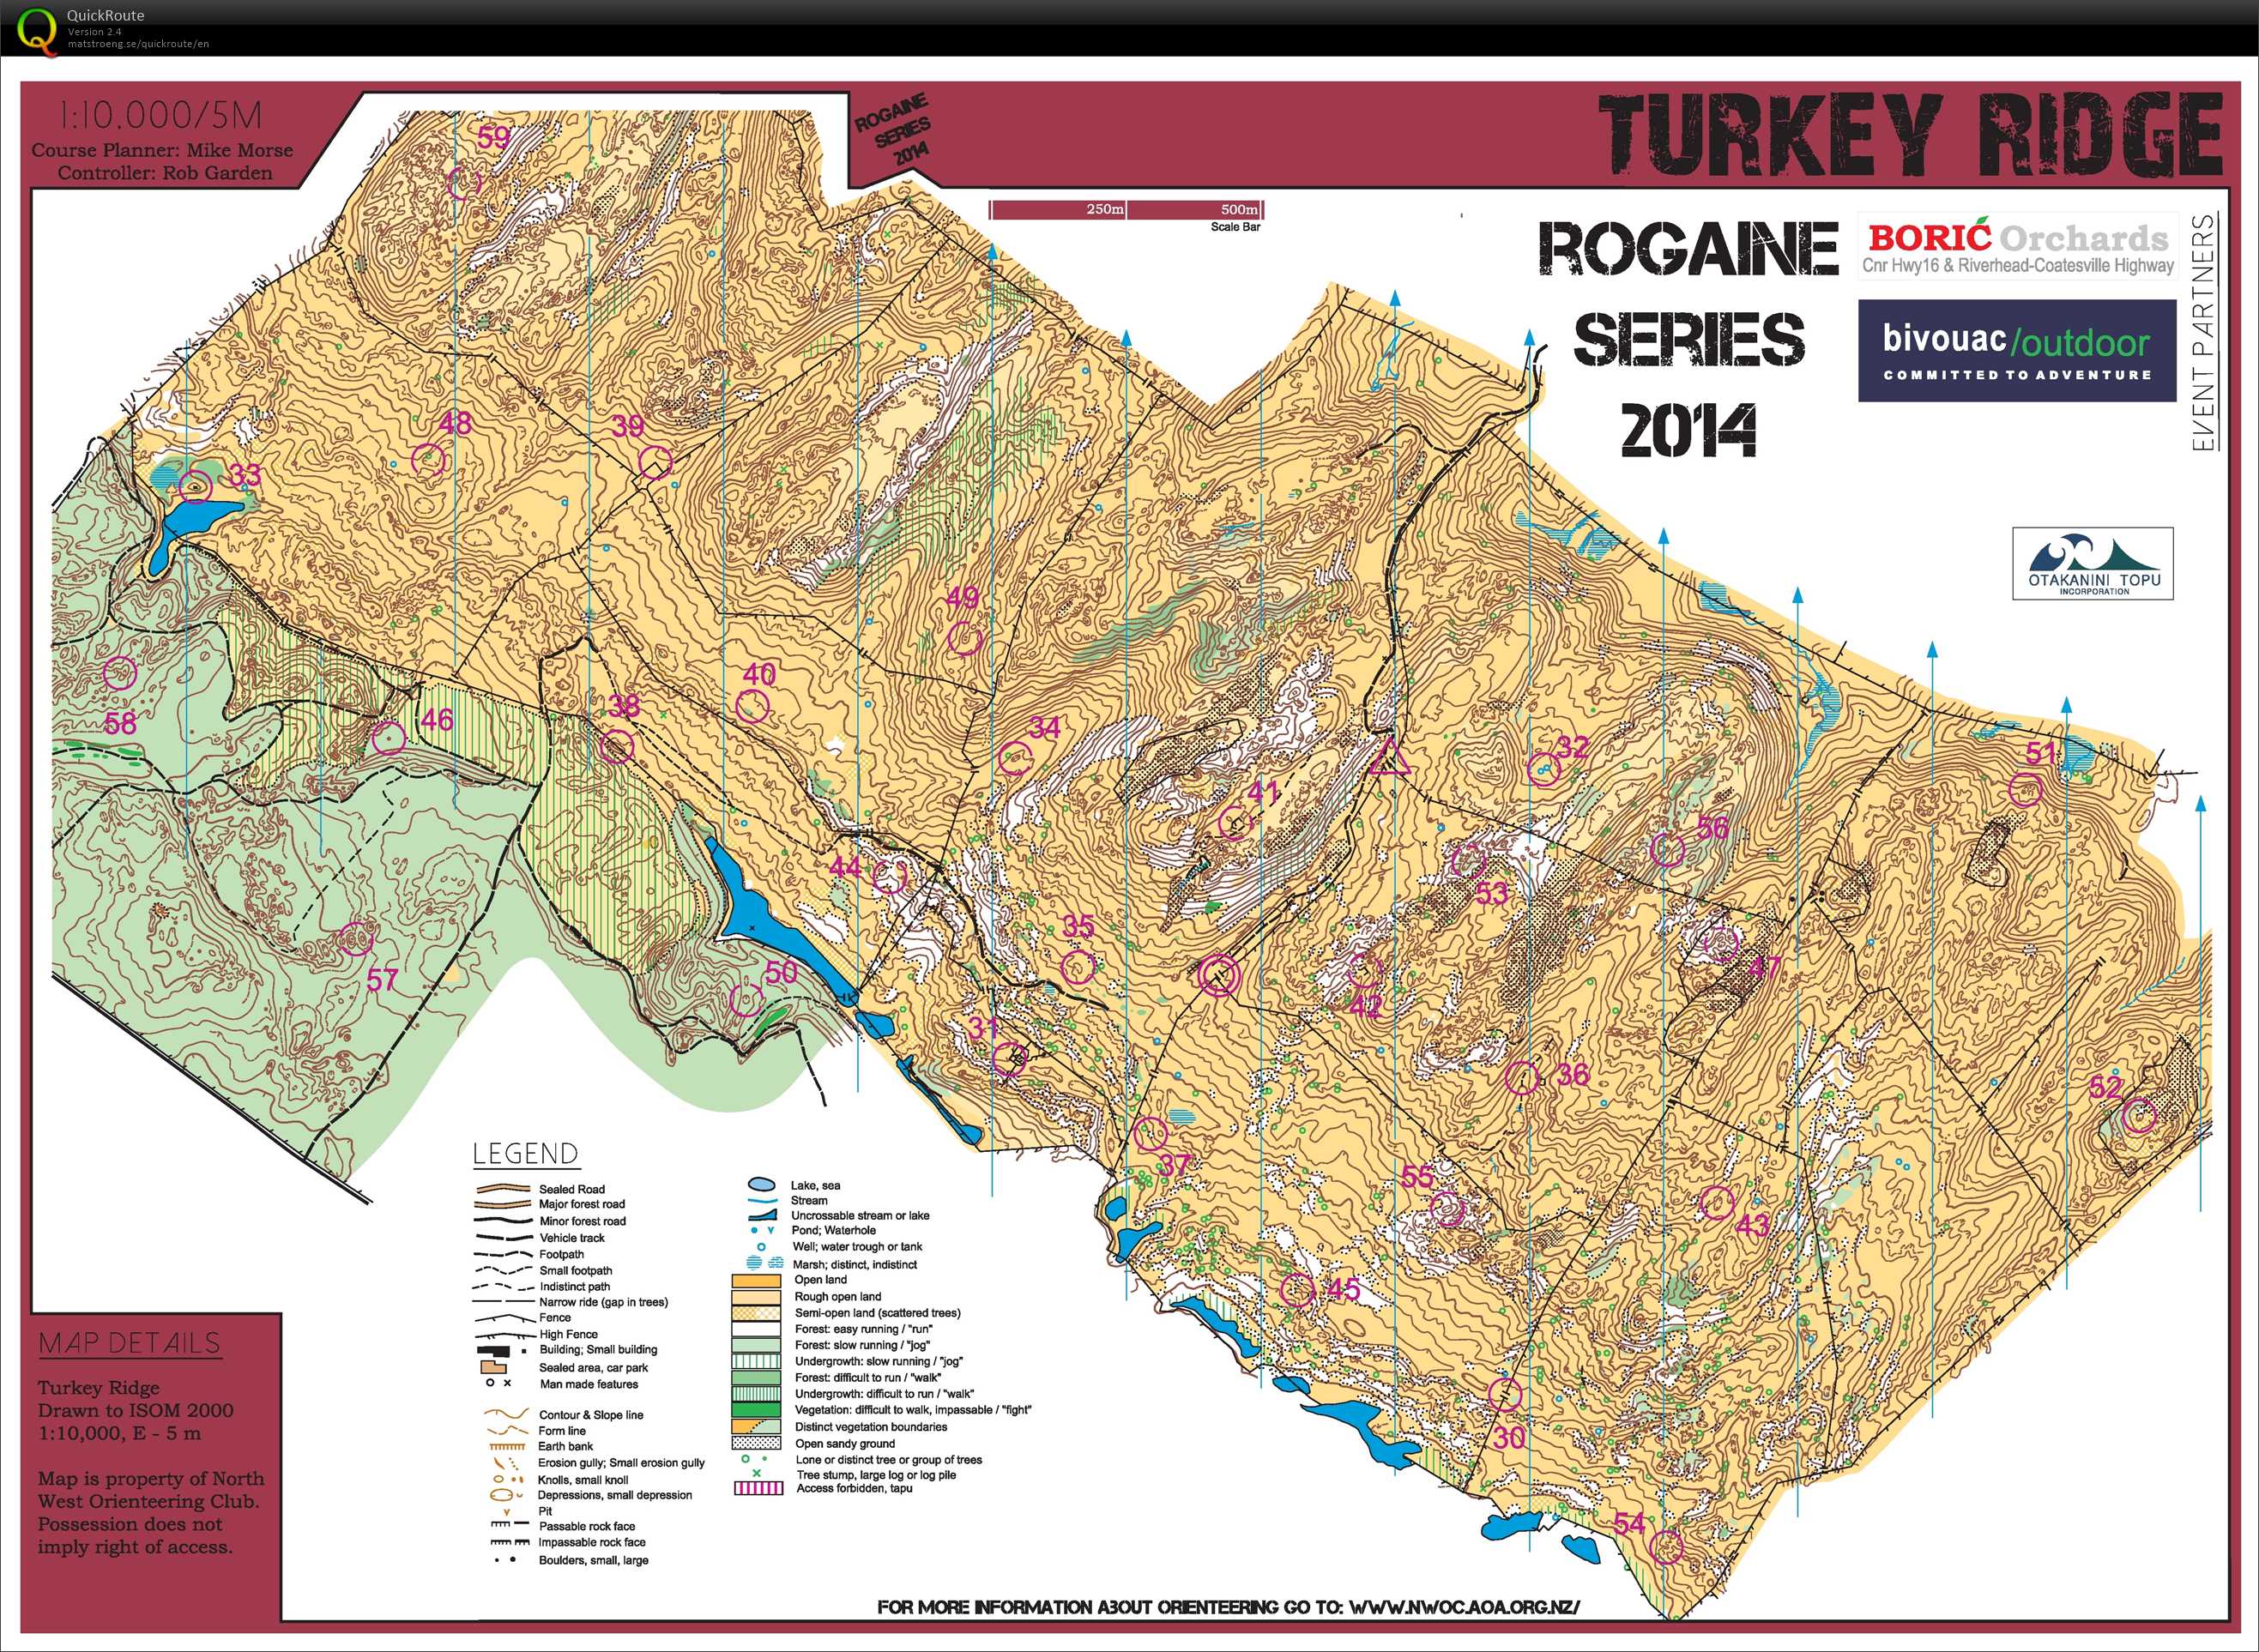 Rogaine Series Part 2 - Turkey Ridge (10.05.2014)